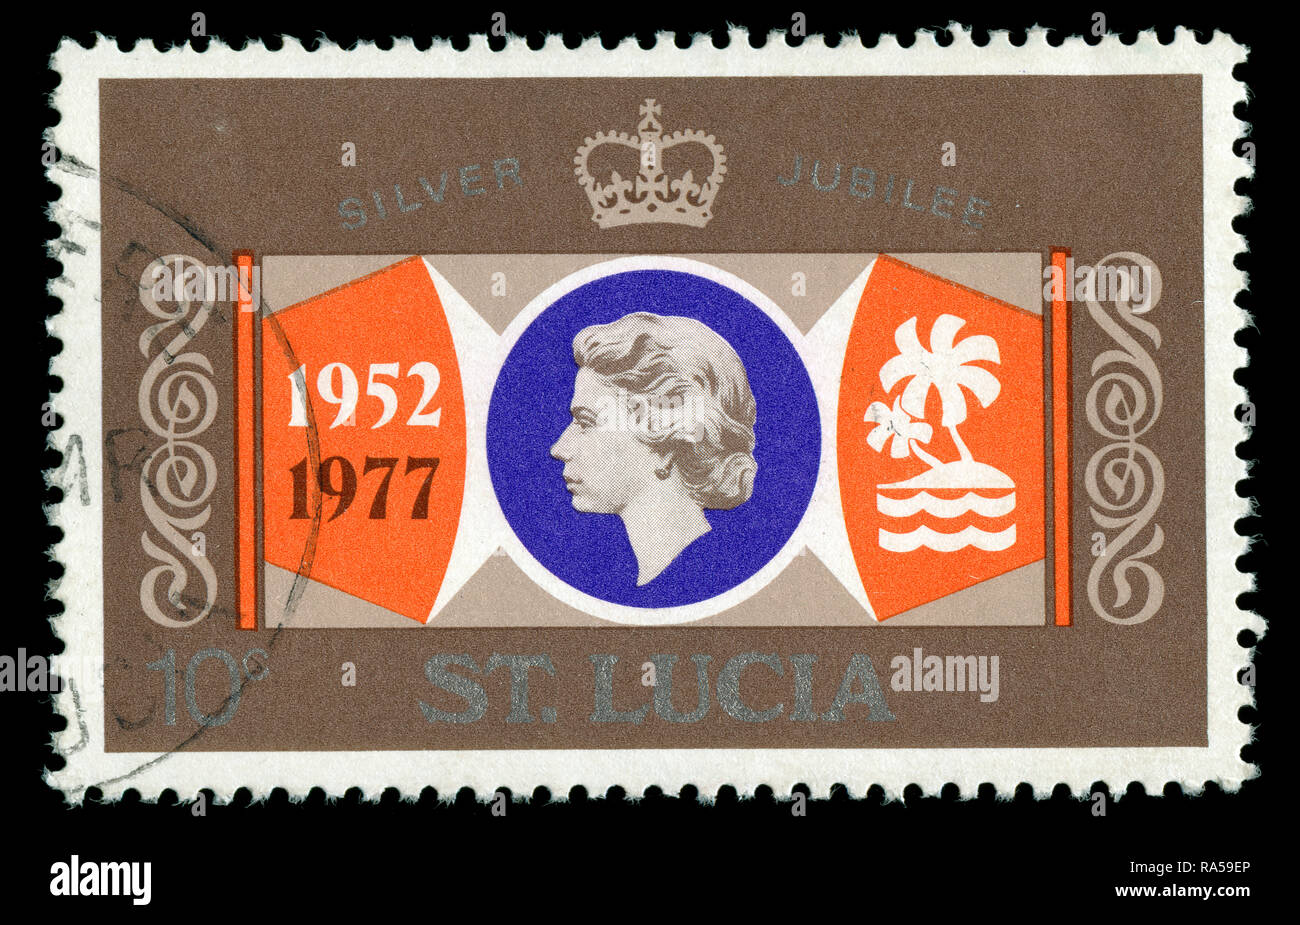 Timbre-poste de Sainte Lucie dans le jubilé d'argent série émise en 1977 Banque D'Images